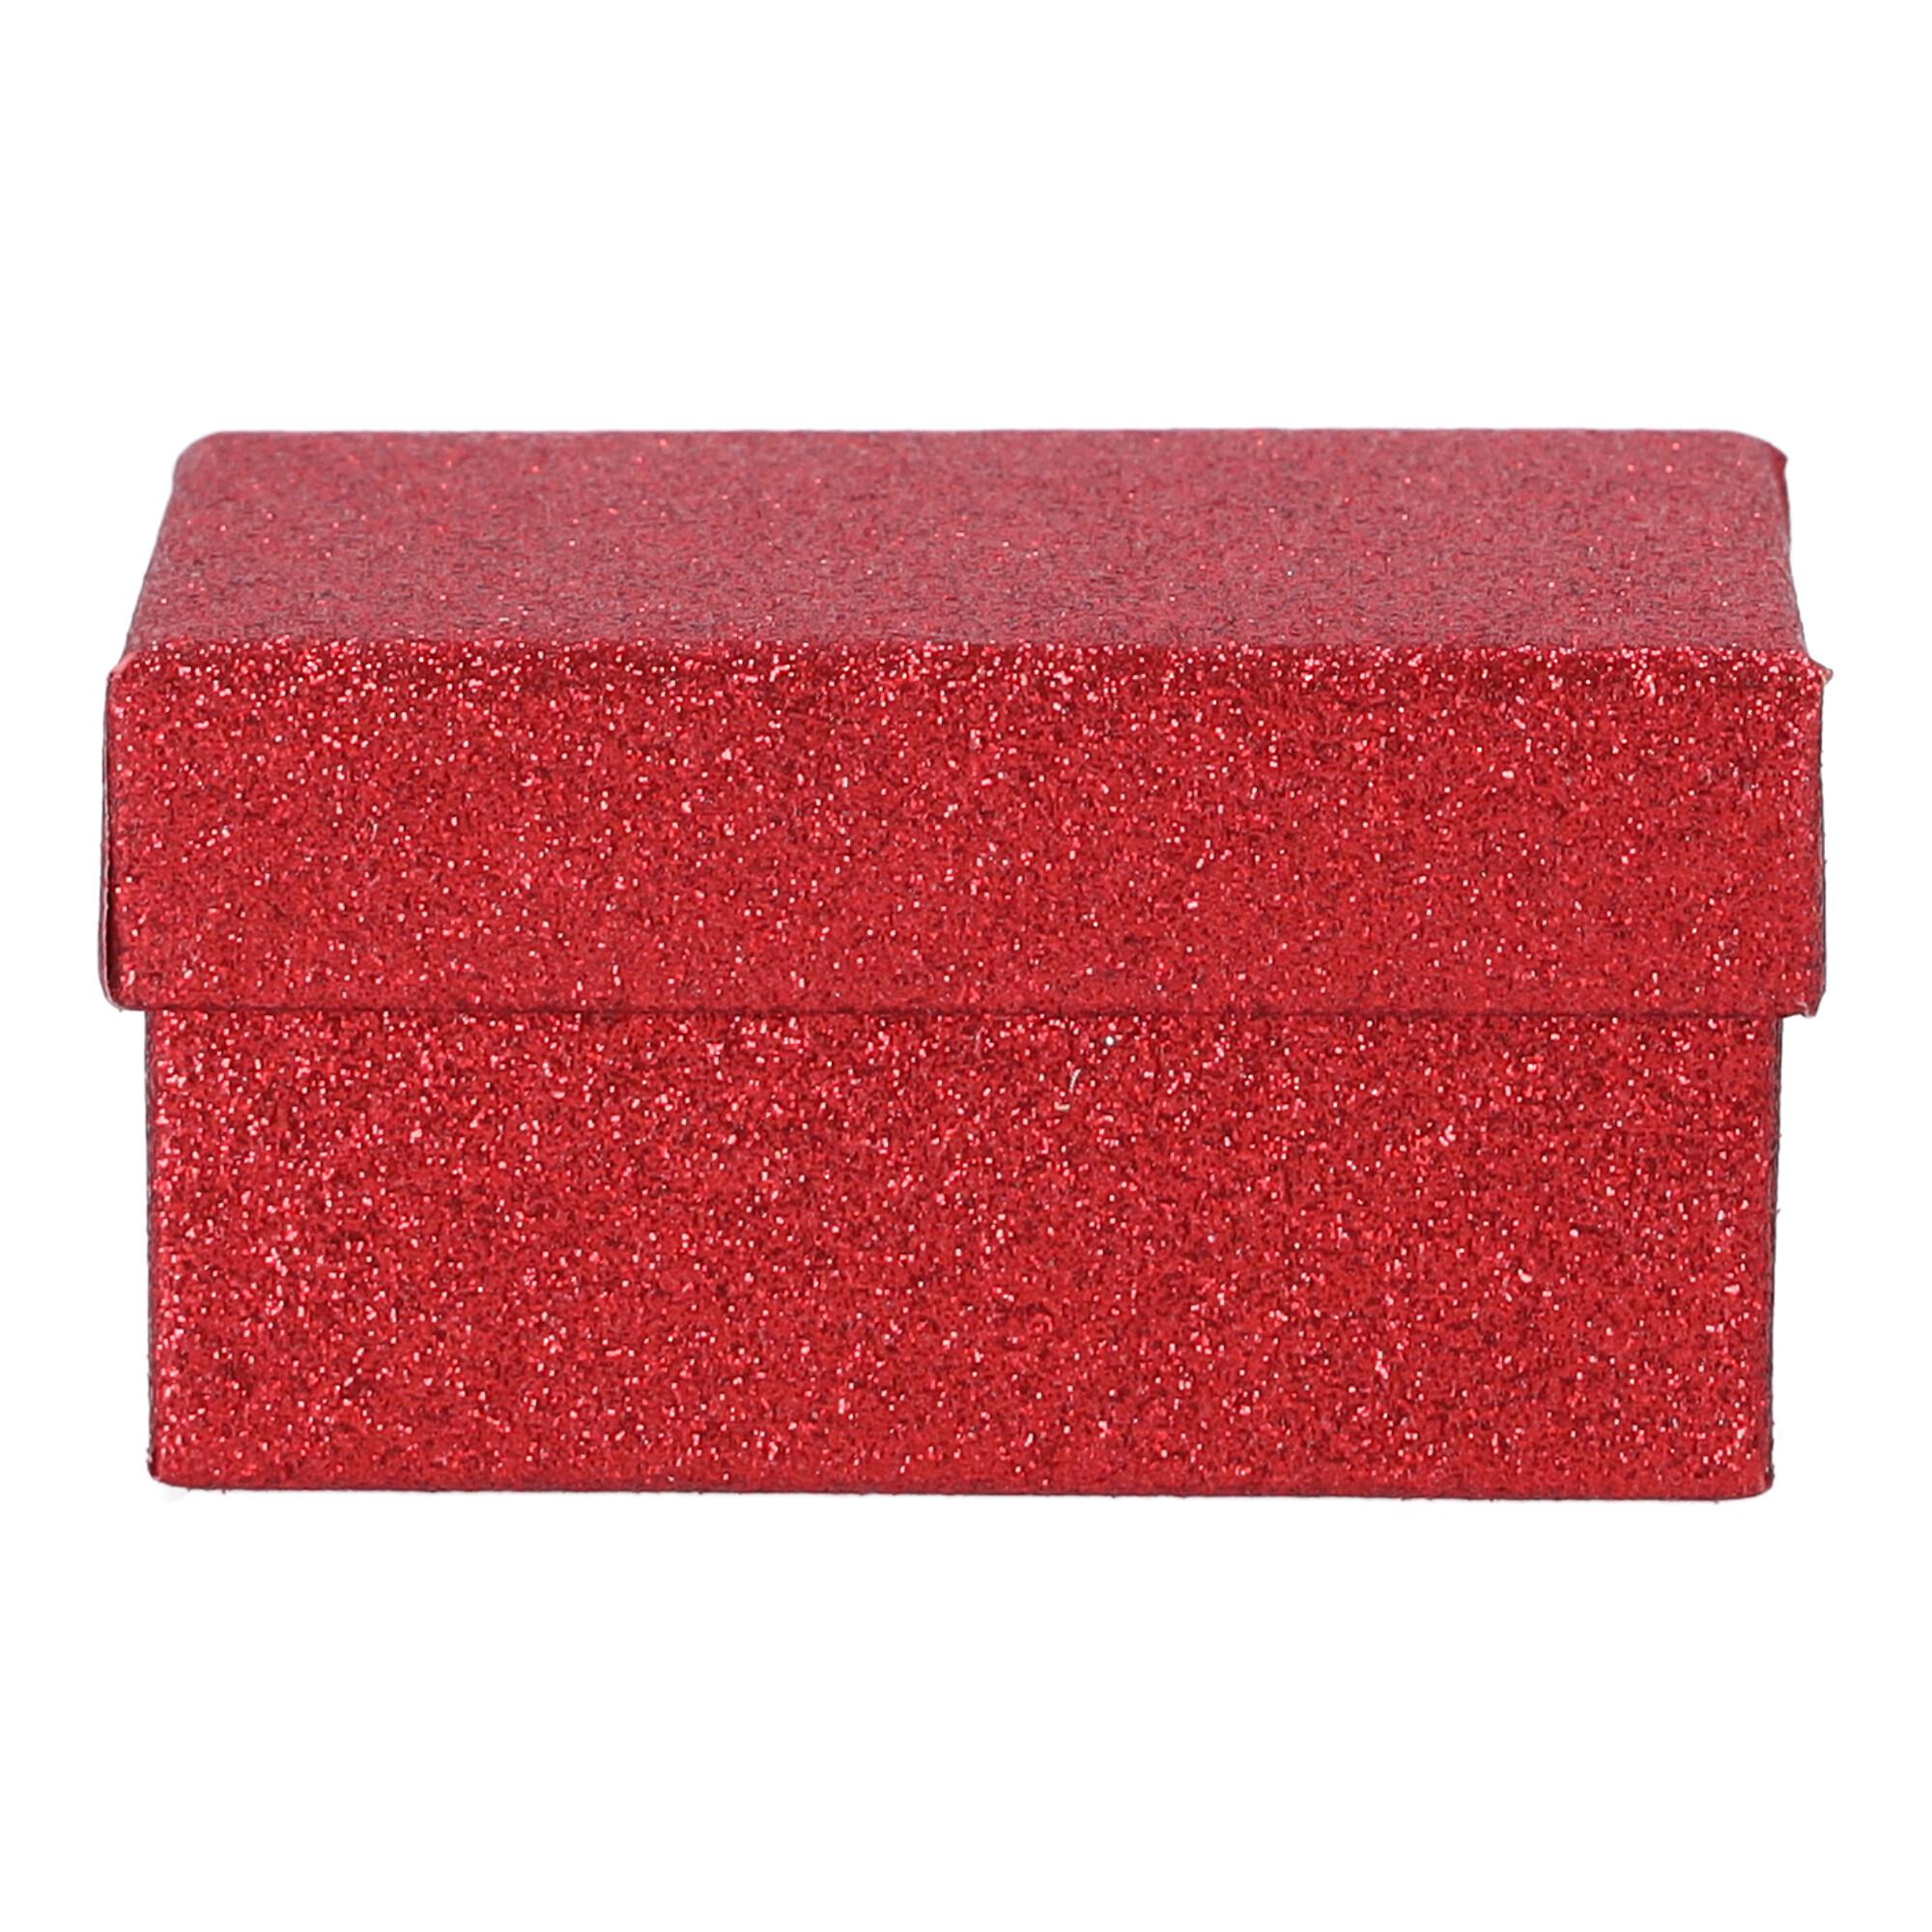 Małe pudełko prezentowe 11x7,5x5,5 cm - Czerwone